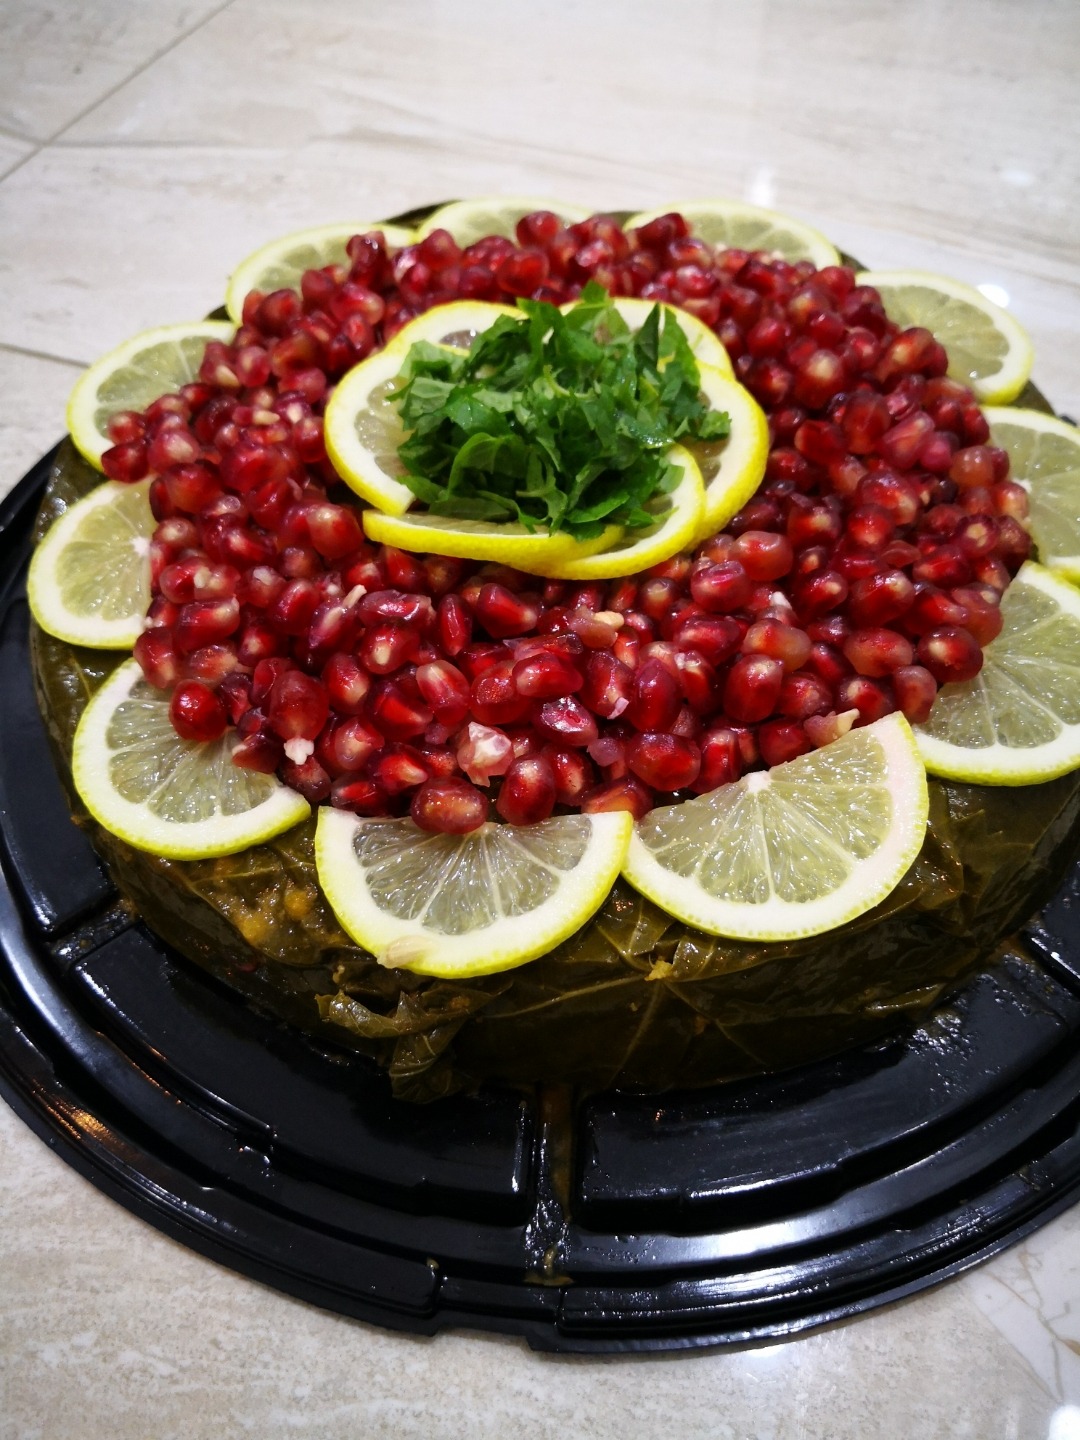 كعكة الورق عنب 😋🤤 @ Jwana kitchen - Bahrain